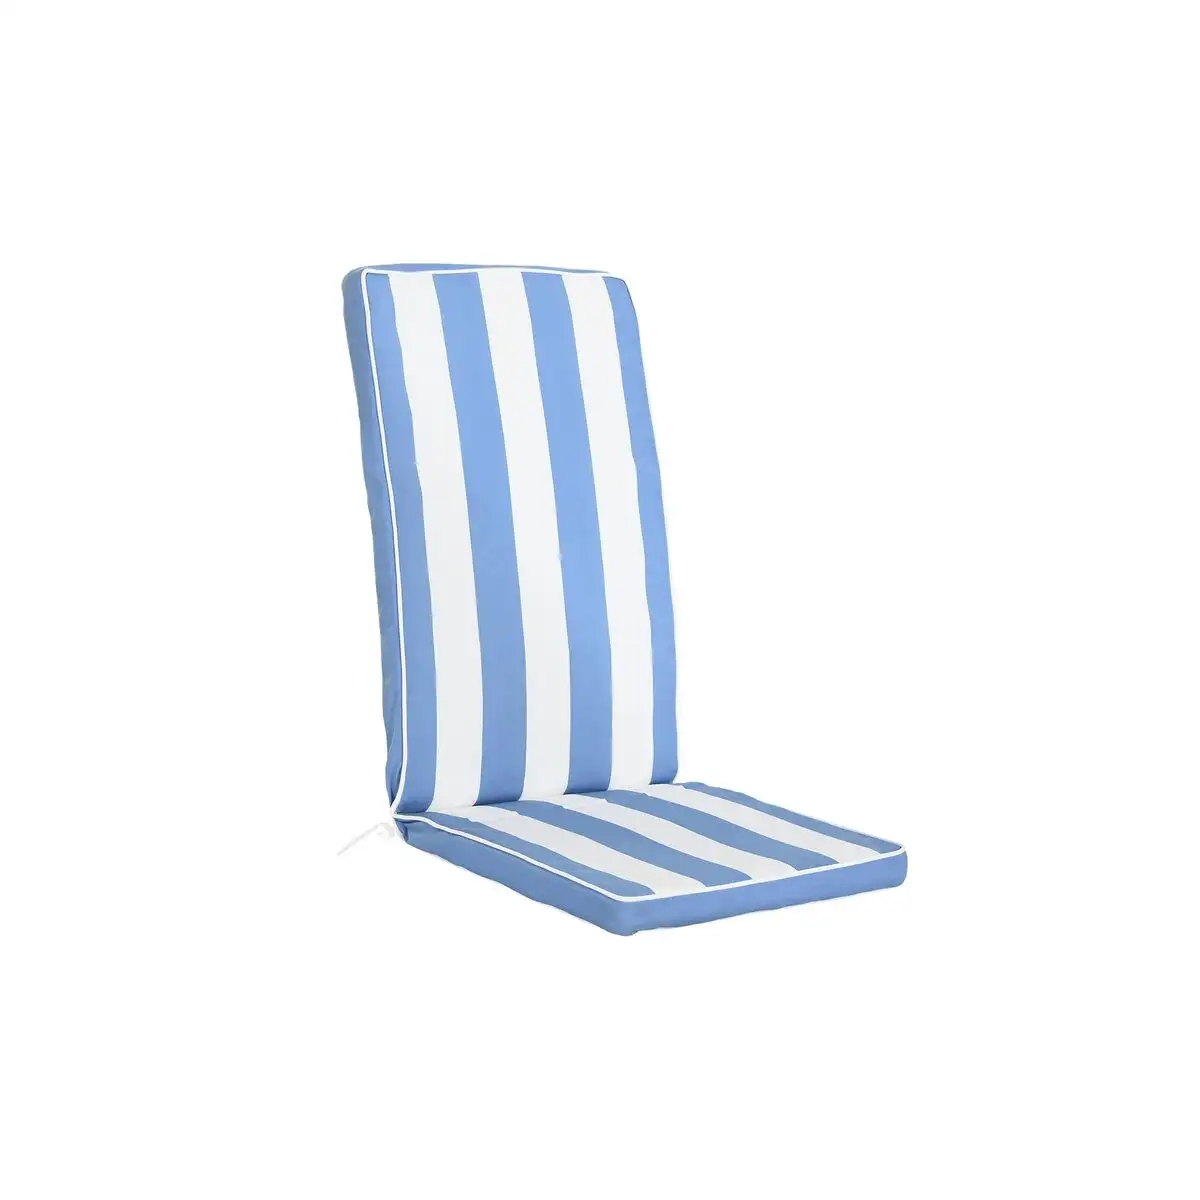 Coussin de chaise dkd home decor rayures blanc bleu ciel 42 x 4 x 115 cm _2896. Bienvenue sur DIAYTAR SENEGAL - Où Choisir est un Voyage Passionnant. Plongez dans notre catalogue et trouvez des produits qui révèlent la diversité et la beauté du Sénégal.